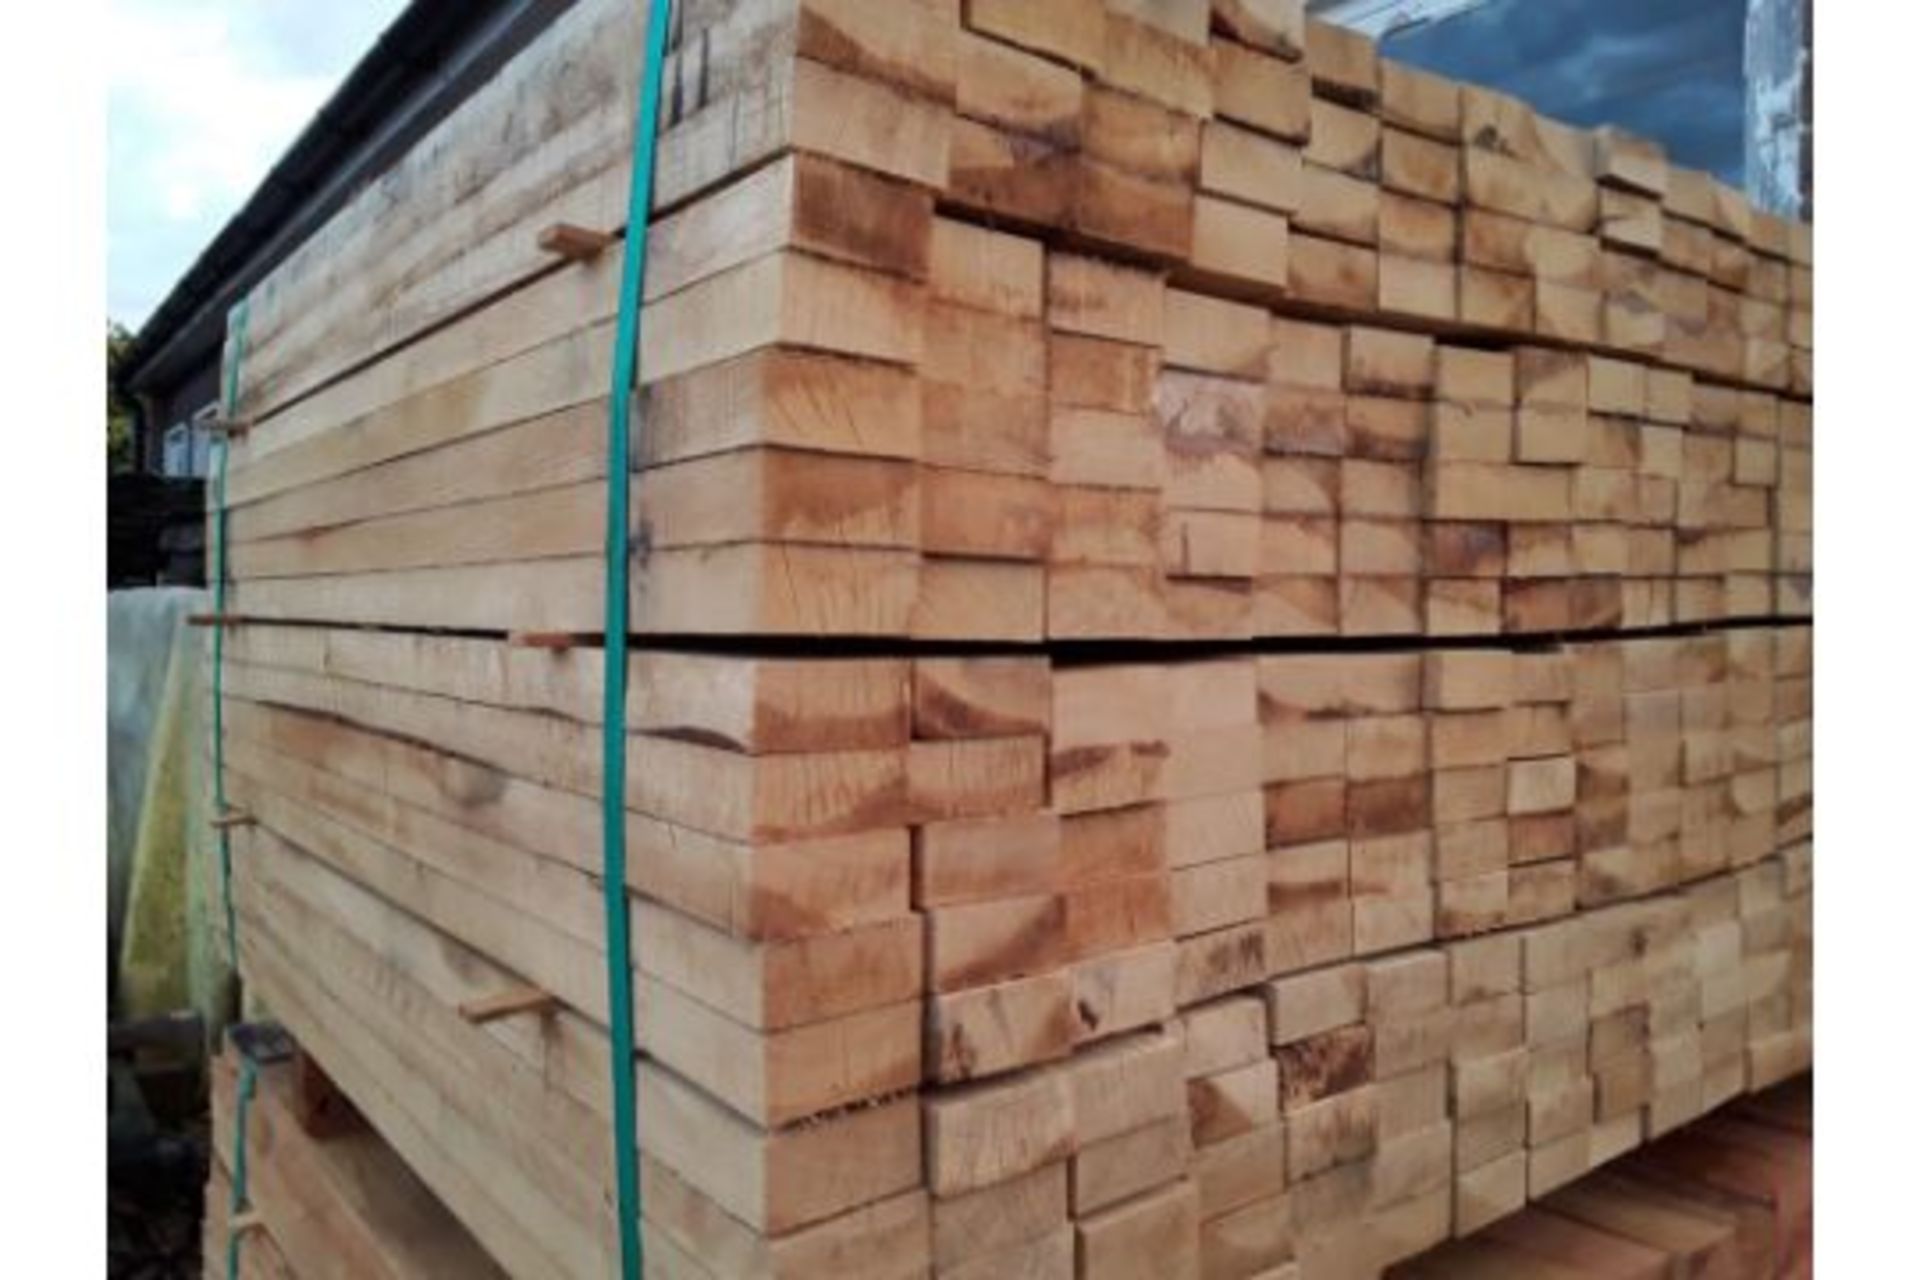 100x hardwood sawn unseasoned english oak palings / timber offcuts - Image 3 of 3